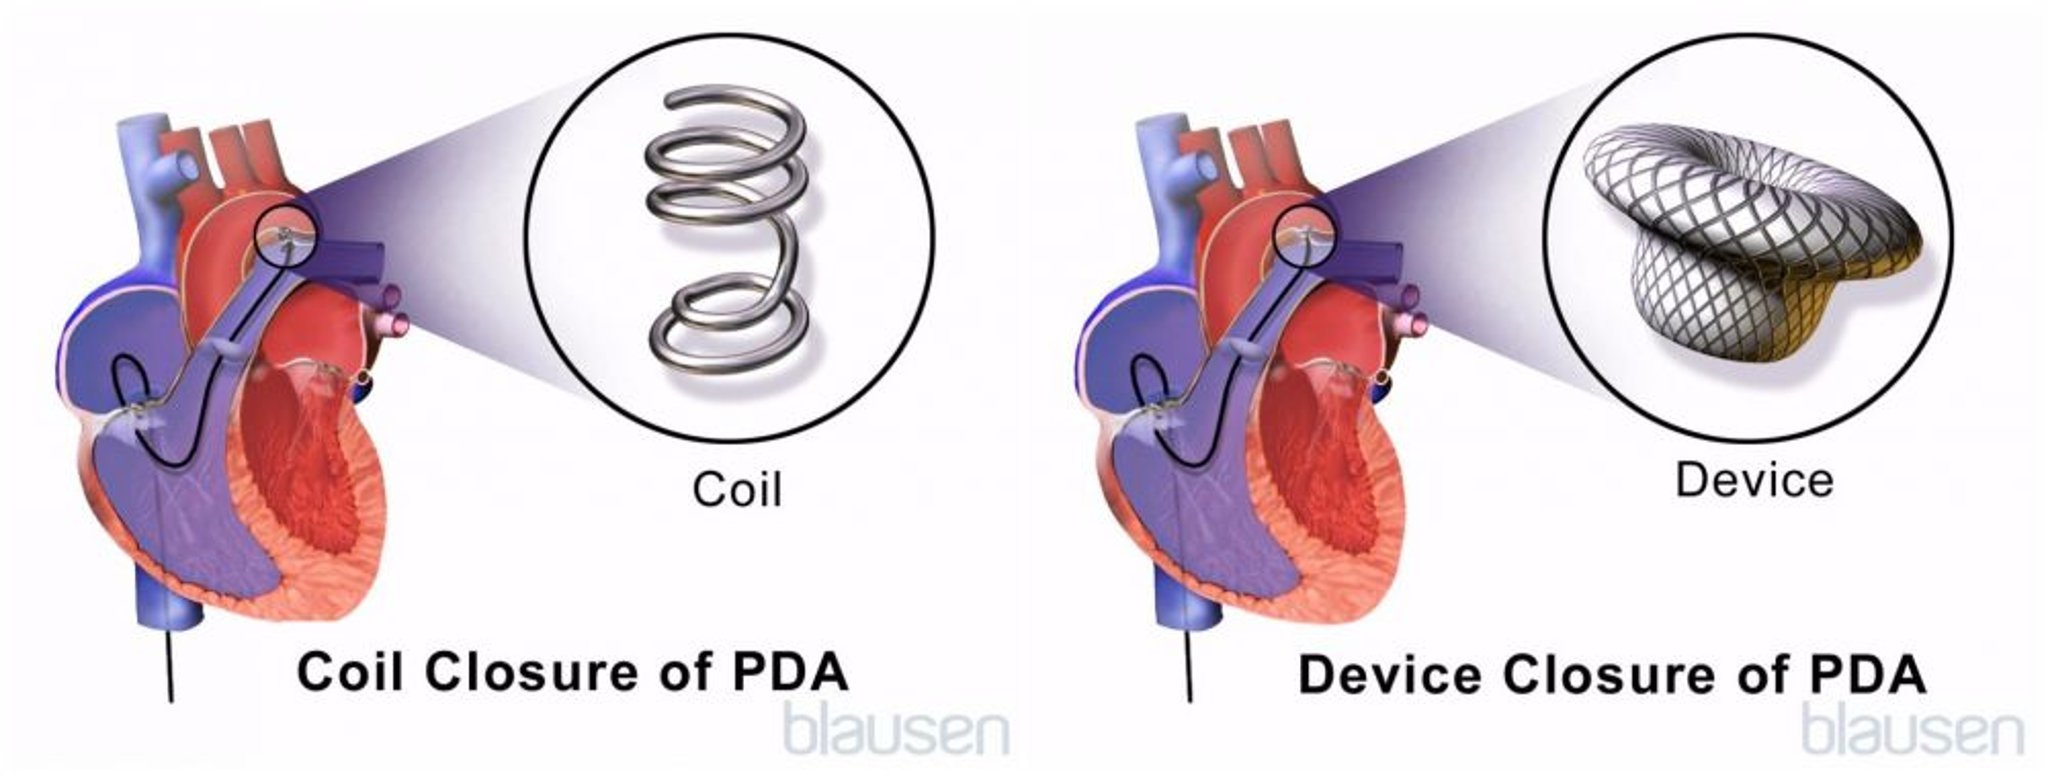 Reparatur eines persistierenden Ductus arteriosus (PDA)